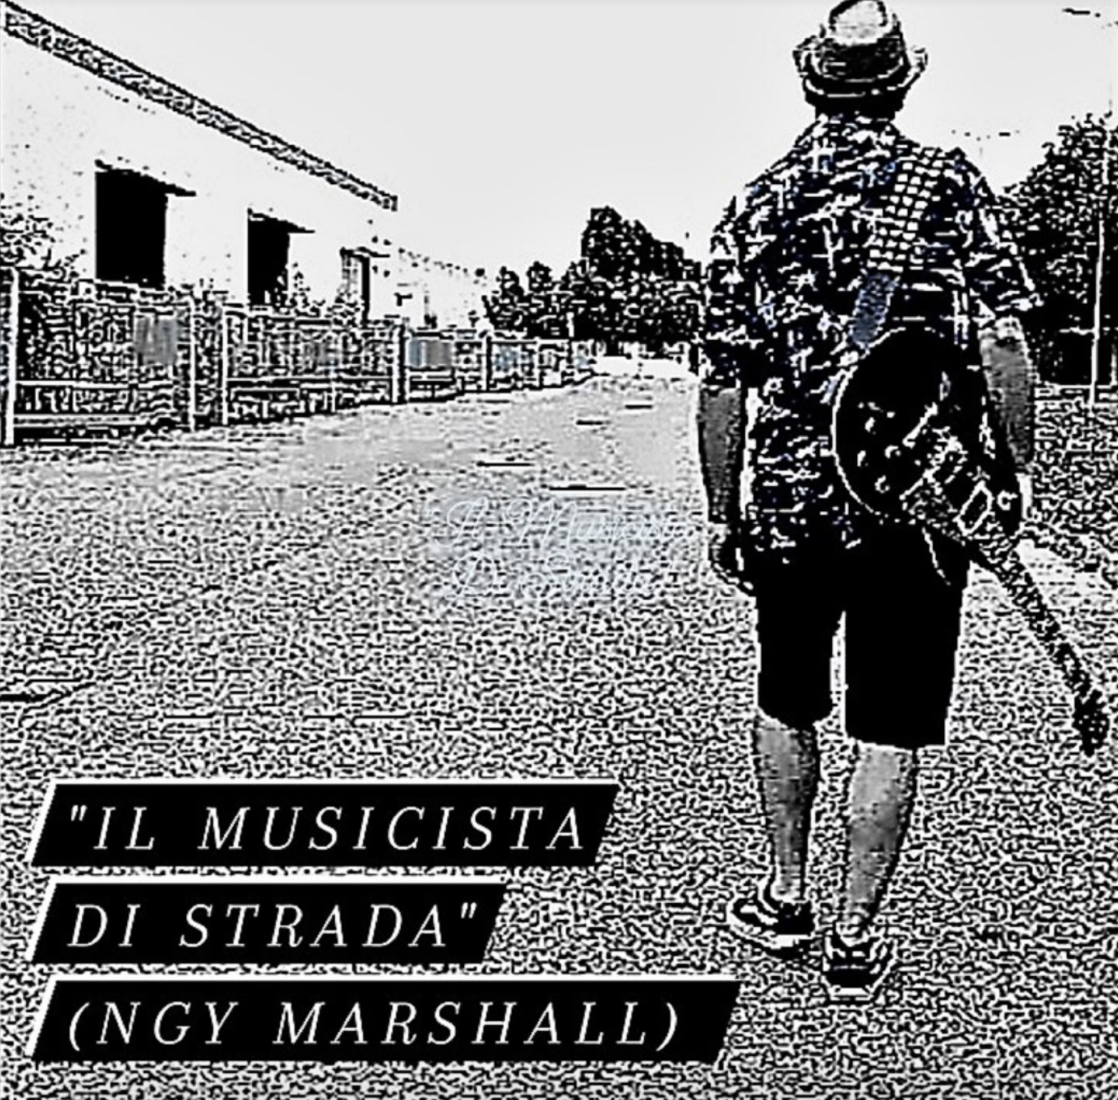 Il musicista di strada: ecco il nuovo singolo del cantautore NGY Marshall